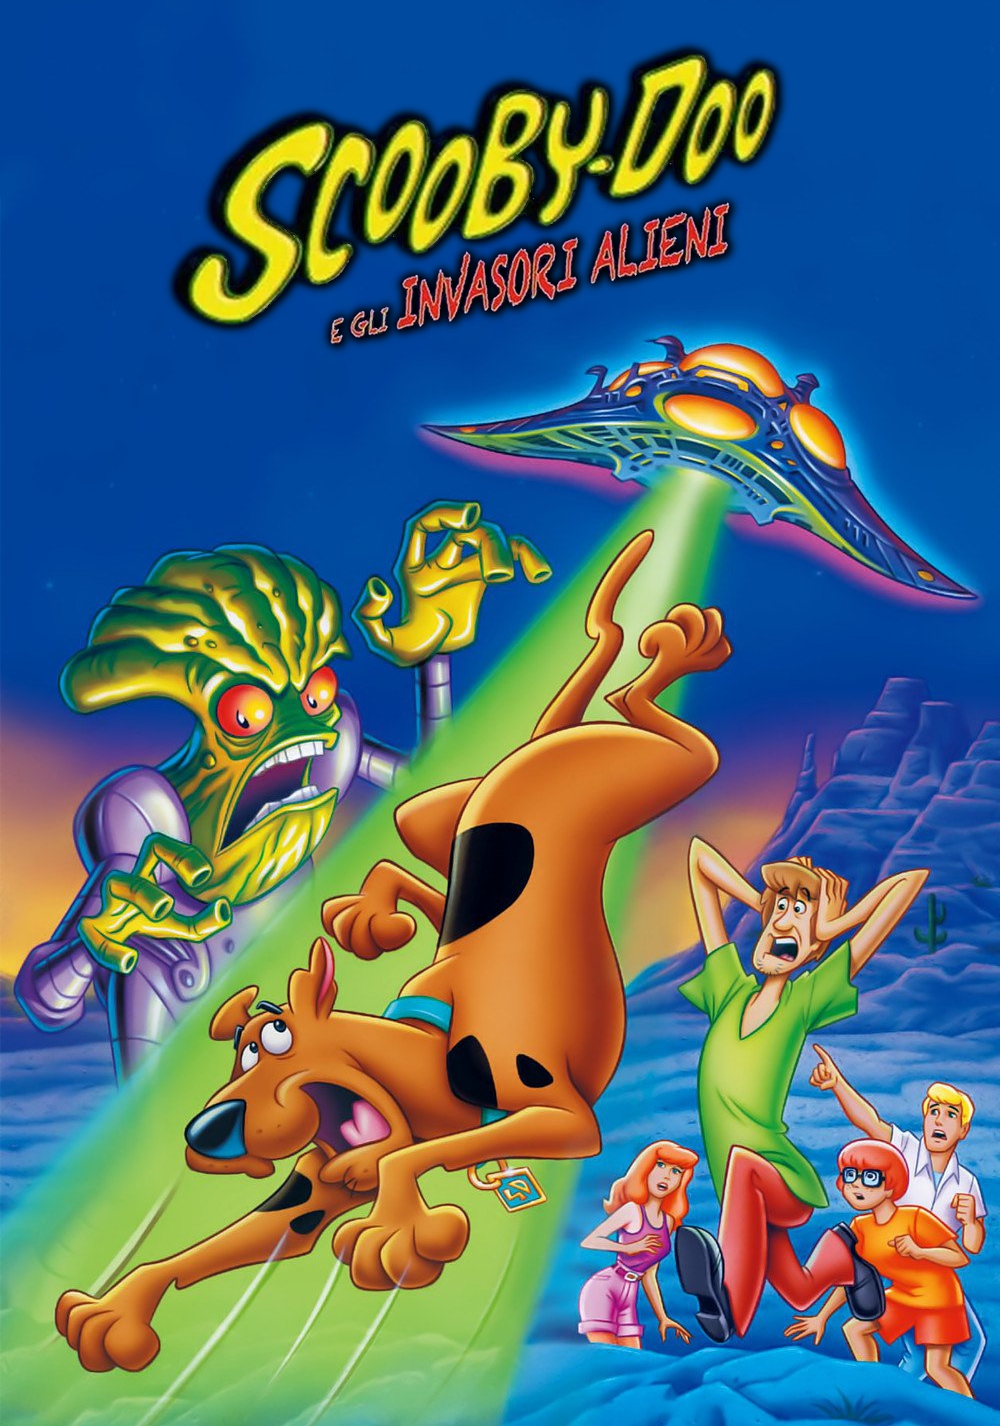 Scooby-Doo e gli invasori alieni [HD] (2000)